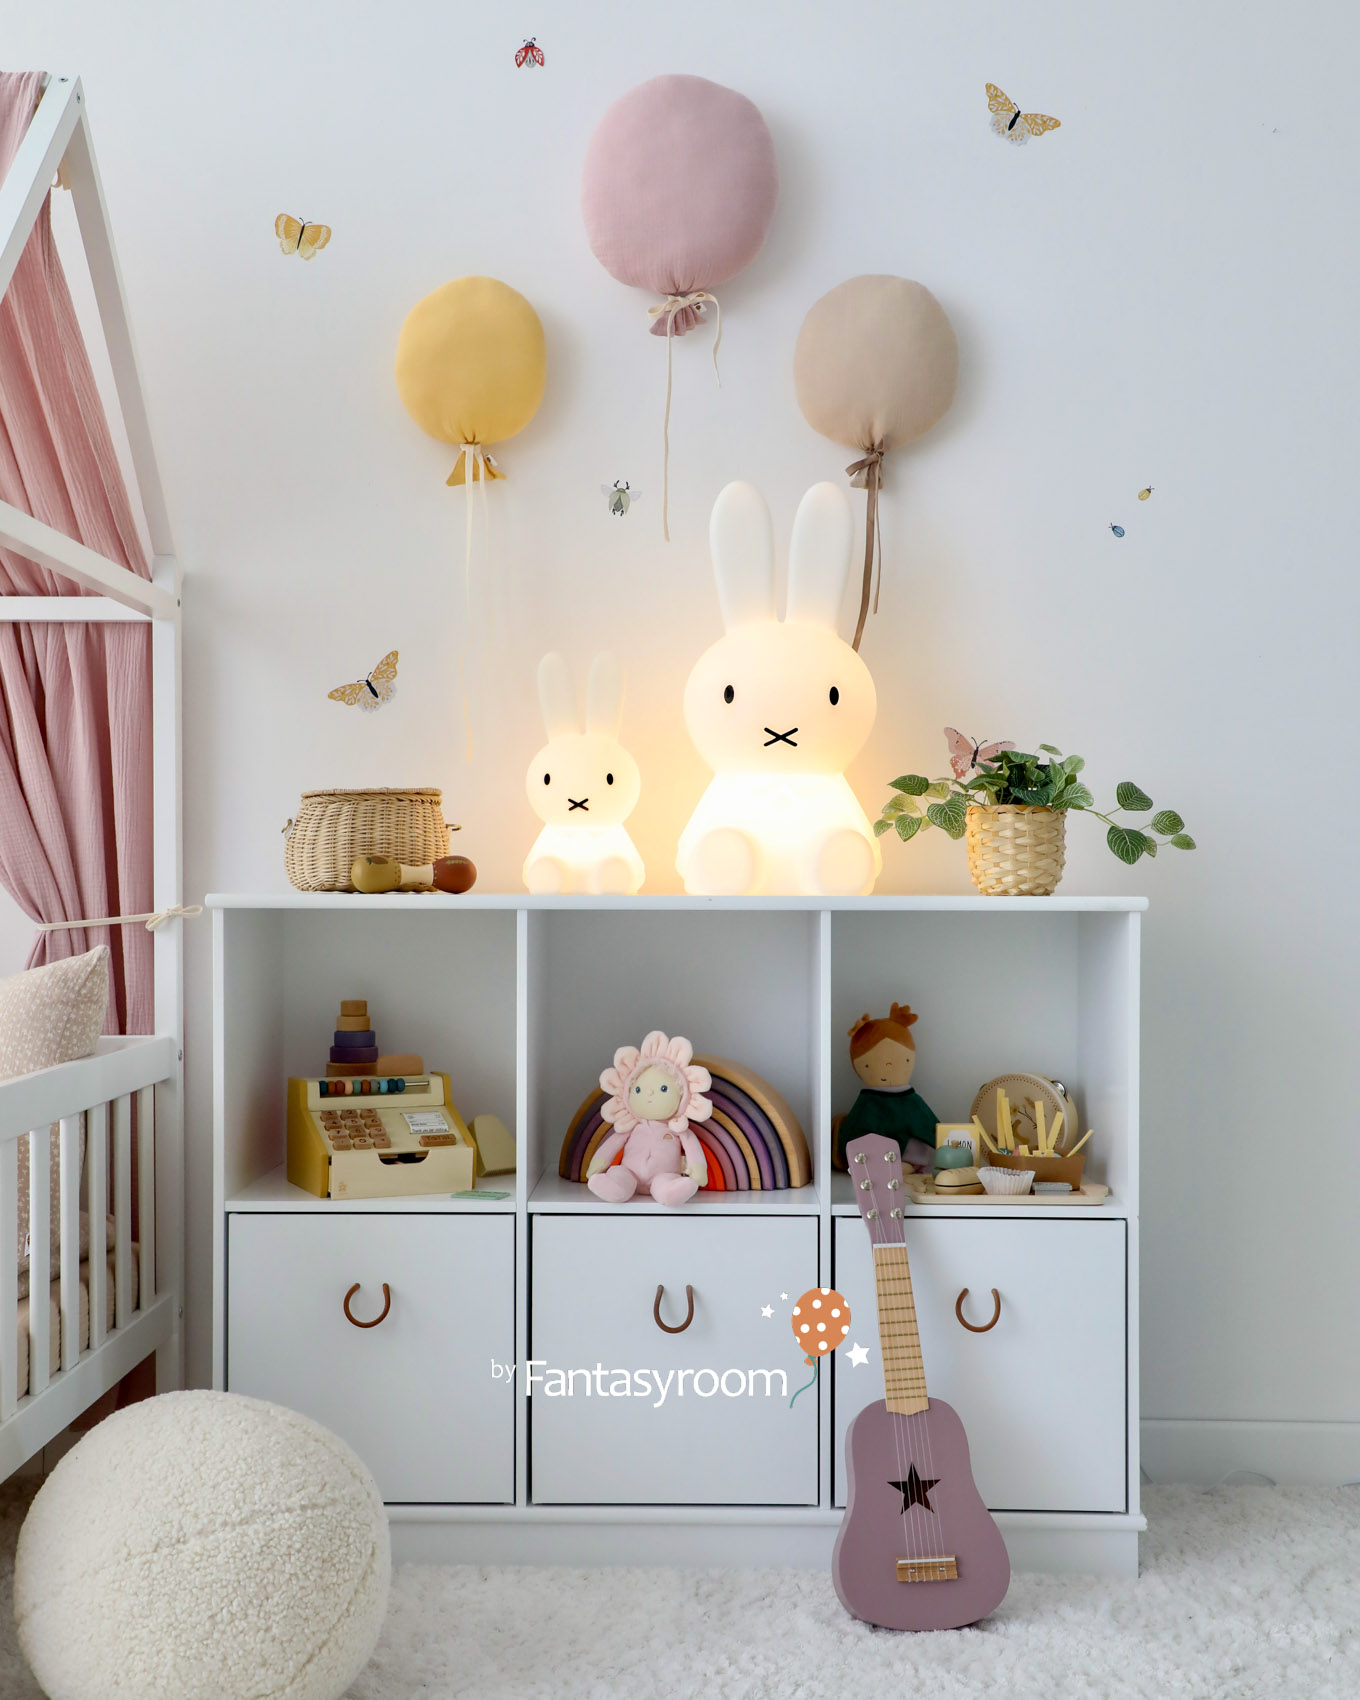 Spielzeugregal mit Miffy Lampen und Holzspielzeug